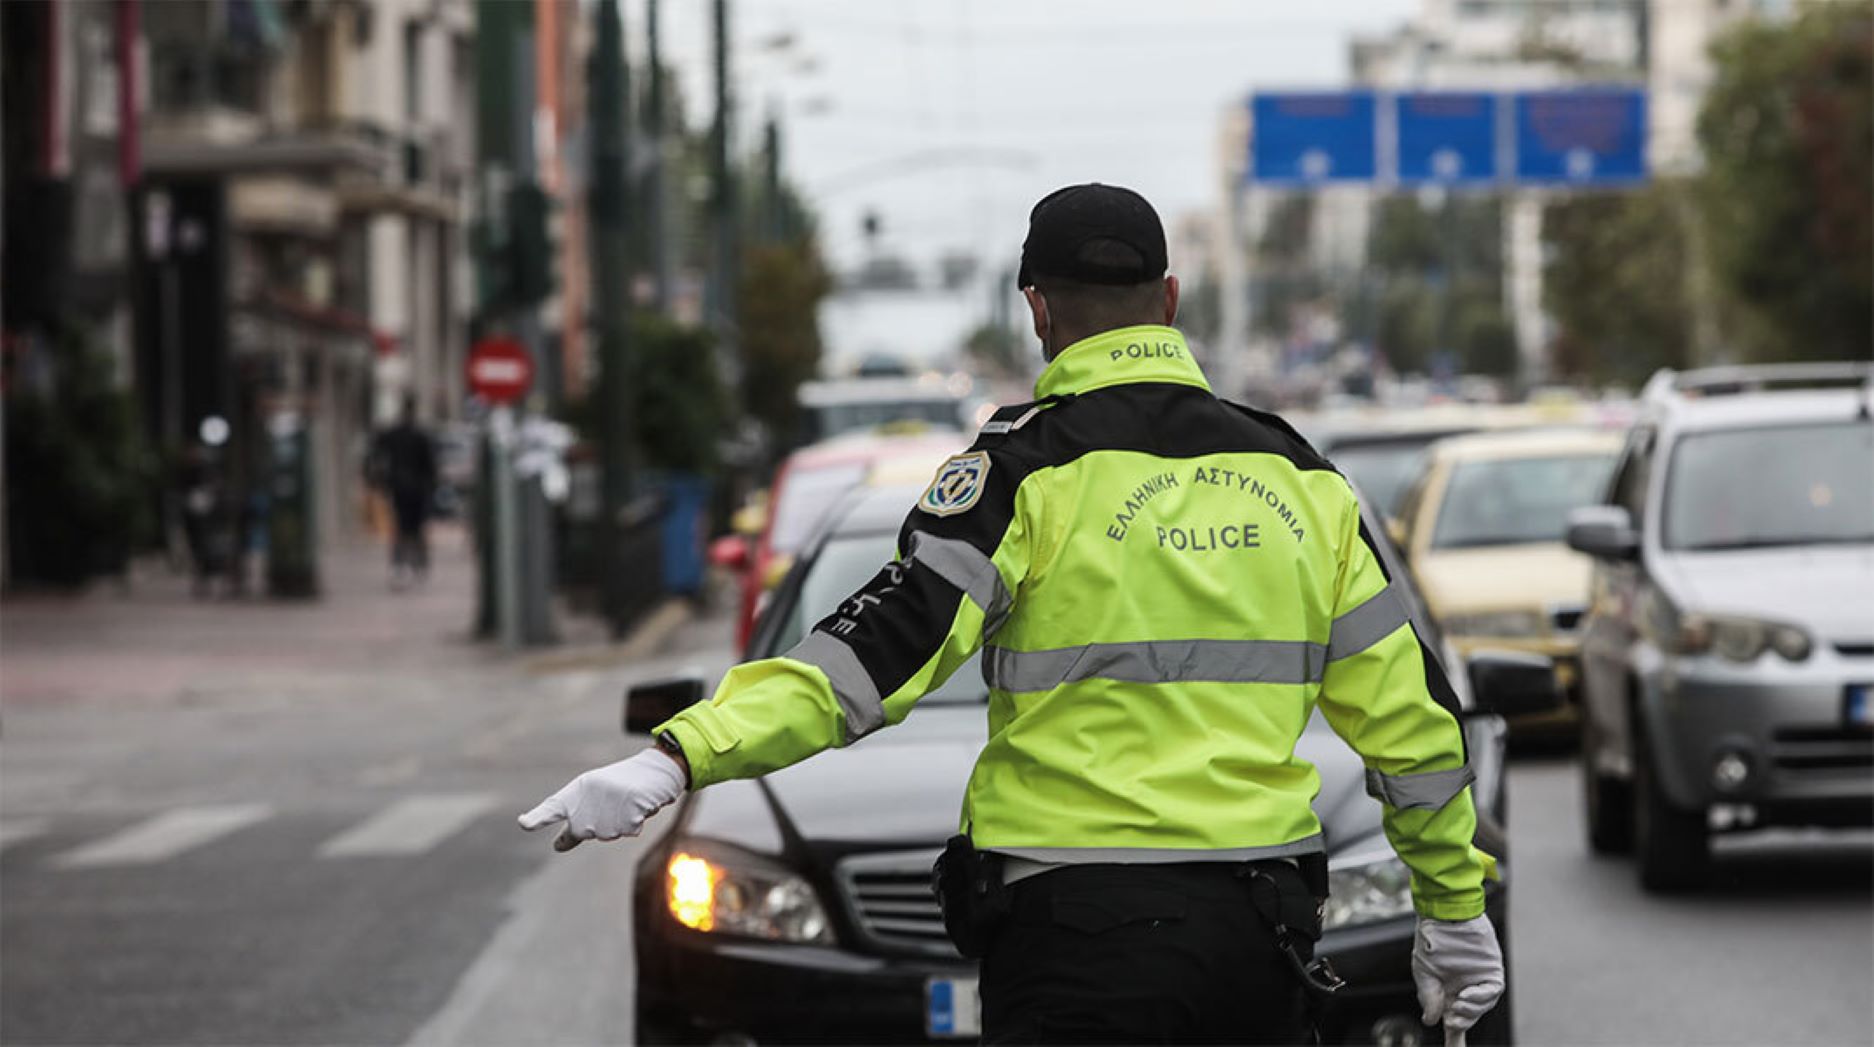 Κυκλοφοριακές ρυθμίσεις στις οδούς Σωκράτους και Αγίου Κωνσταντίνου στο κέντρο της Αθήνας